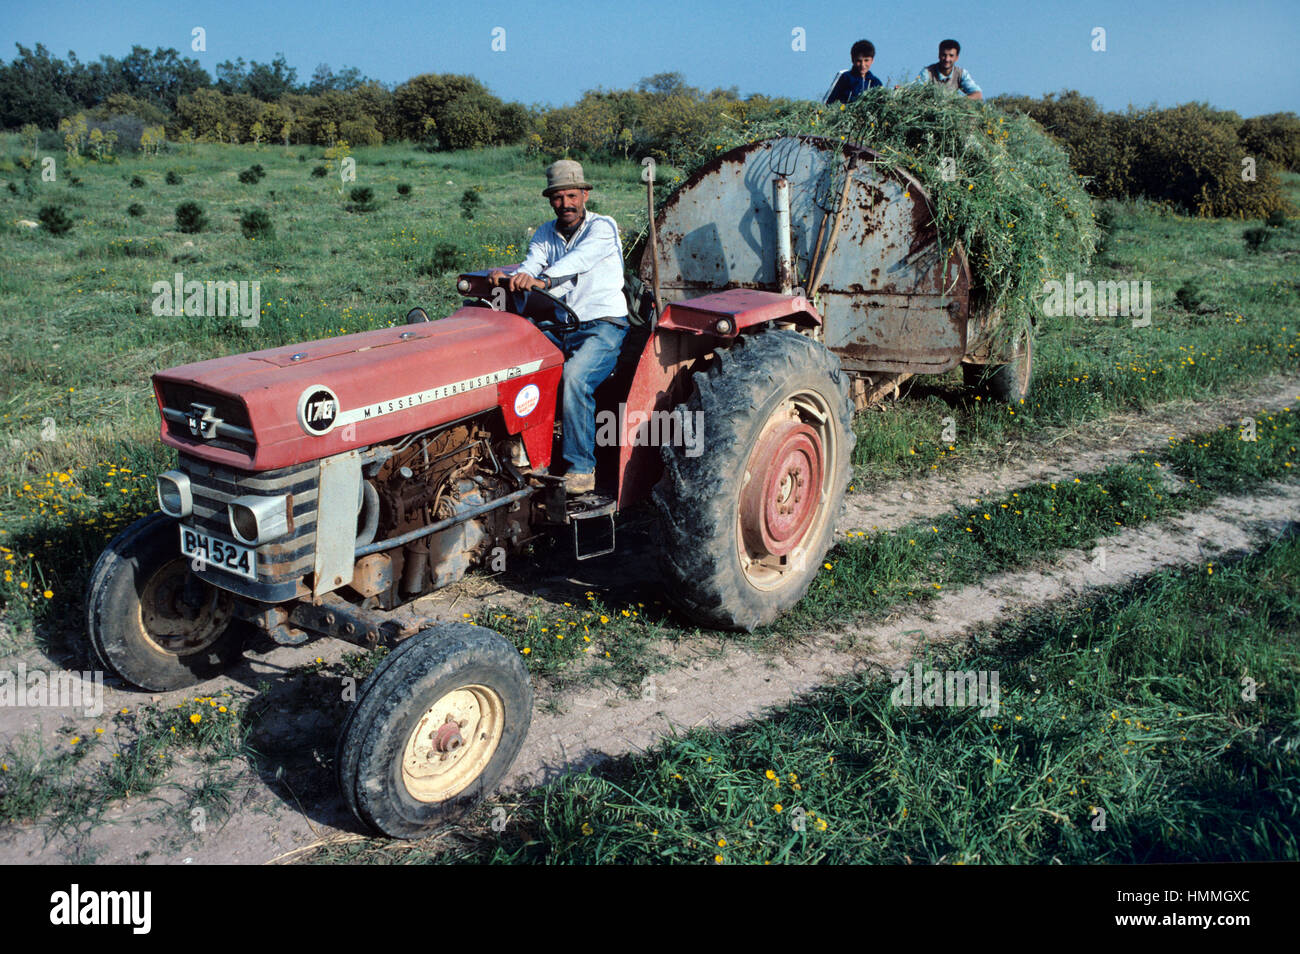 Les agriculteurs utilisant des vieux tracteur Massey Ferguson et de la remorque de foin récolte fenaison ou Chypre du Nord Banque D'Images